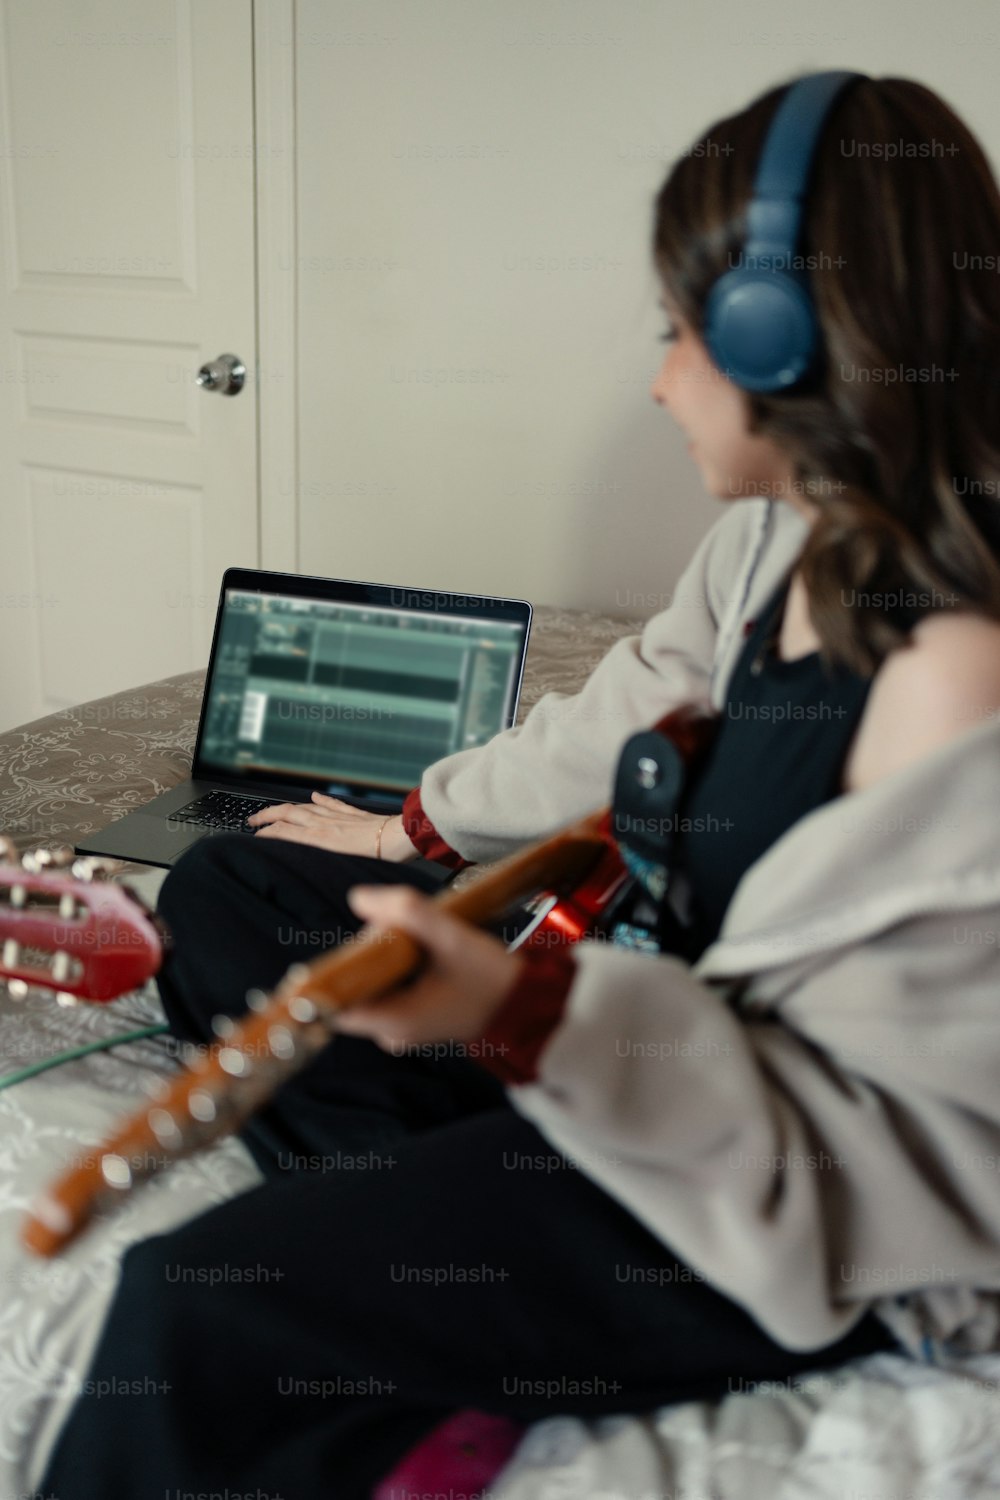 침대에 앉아 기타를 연주하는 여자